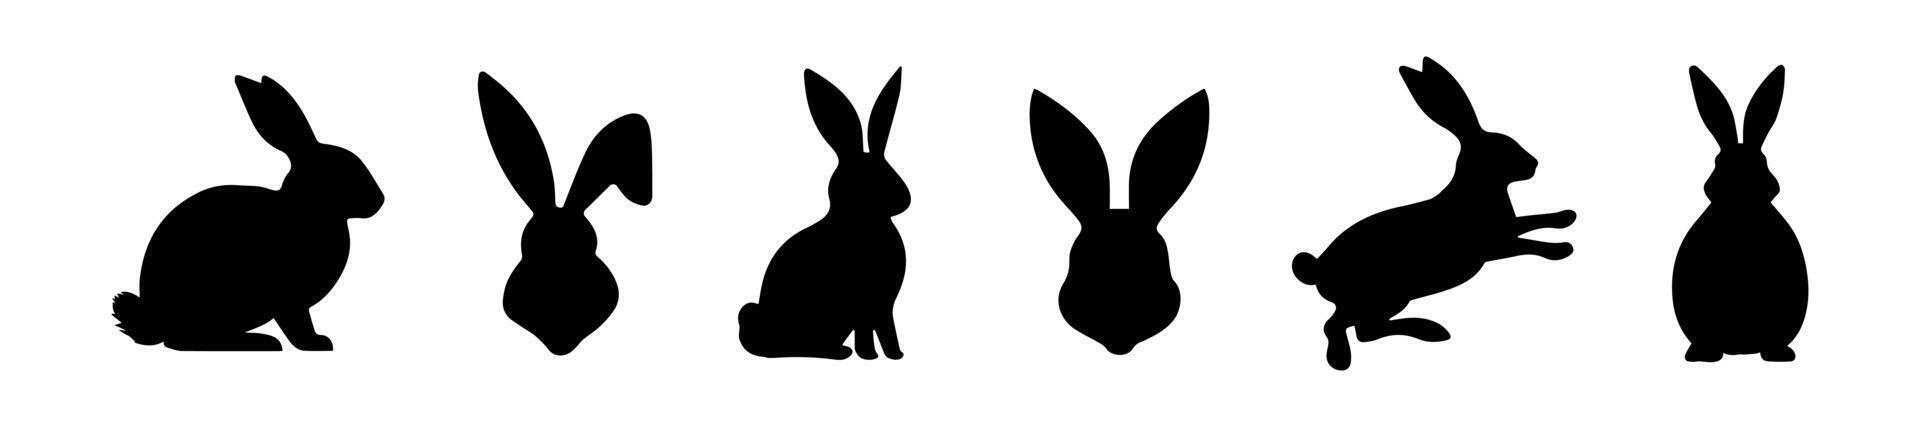 conjunto de Conejo siluetas Pascua de Resurrección conejitos aislado en un blanco antecedentes. un sencillo negro íconos de liebres linda animales ideal para logo, emblema, pictograma, imprimir, diseño elemento para saludo tarjeta. vector